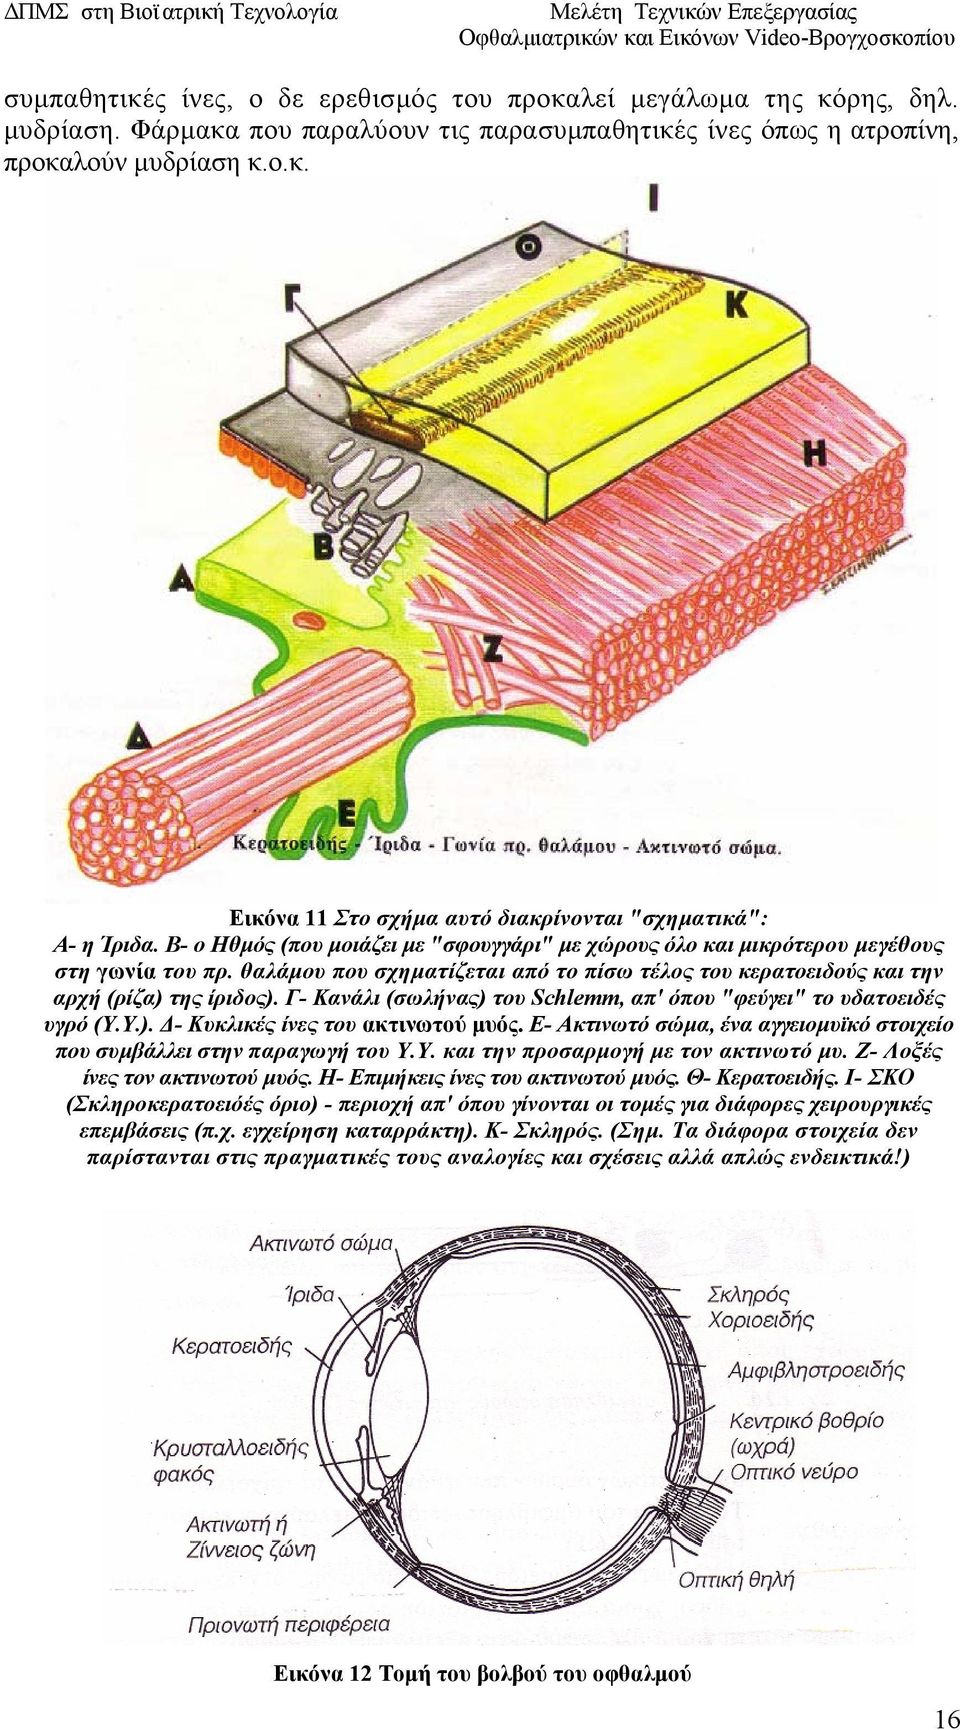 Γ- Κανάλι (σωλήνας) του Schlemm, απ' όπου "φεύγει" το υδατοειδές υγρό (Υ.Υ.). Δ- Κυκλικές ίνες του ακτινωτού μυός. Ε- Ακτινωτό σώμα, ένα αγγειομυϊκό στοιχείο που συμβάλλει στην παραγωγή του Υ.Υ. και την προσαρμογή με τον ακτινωτό μυ.